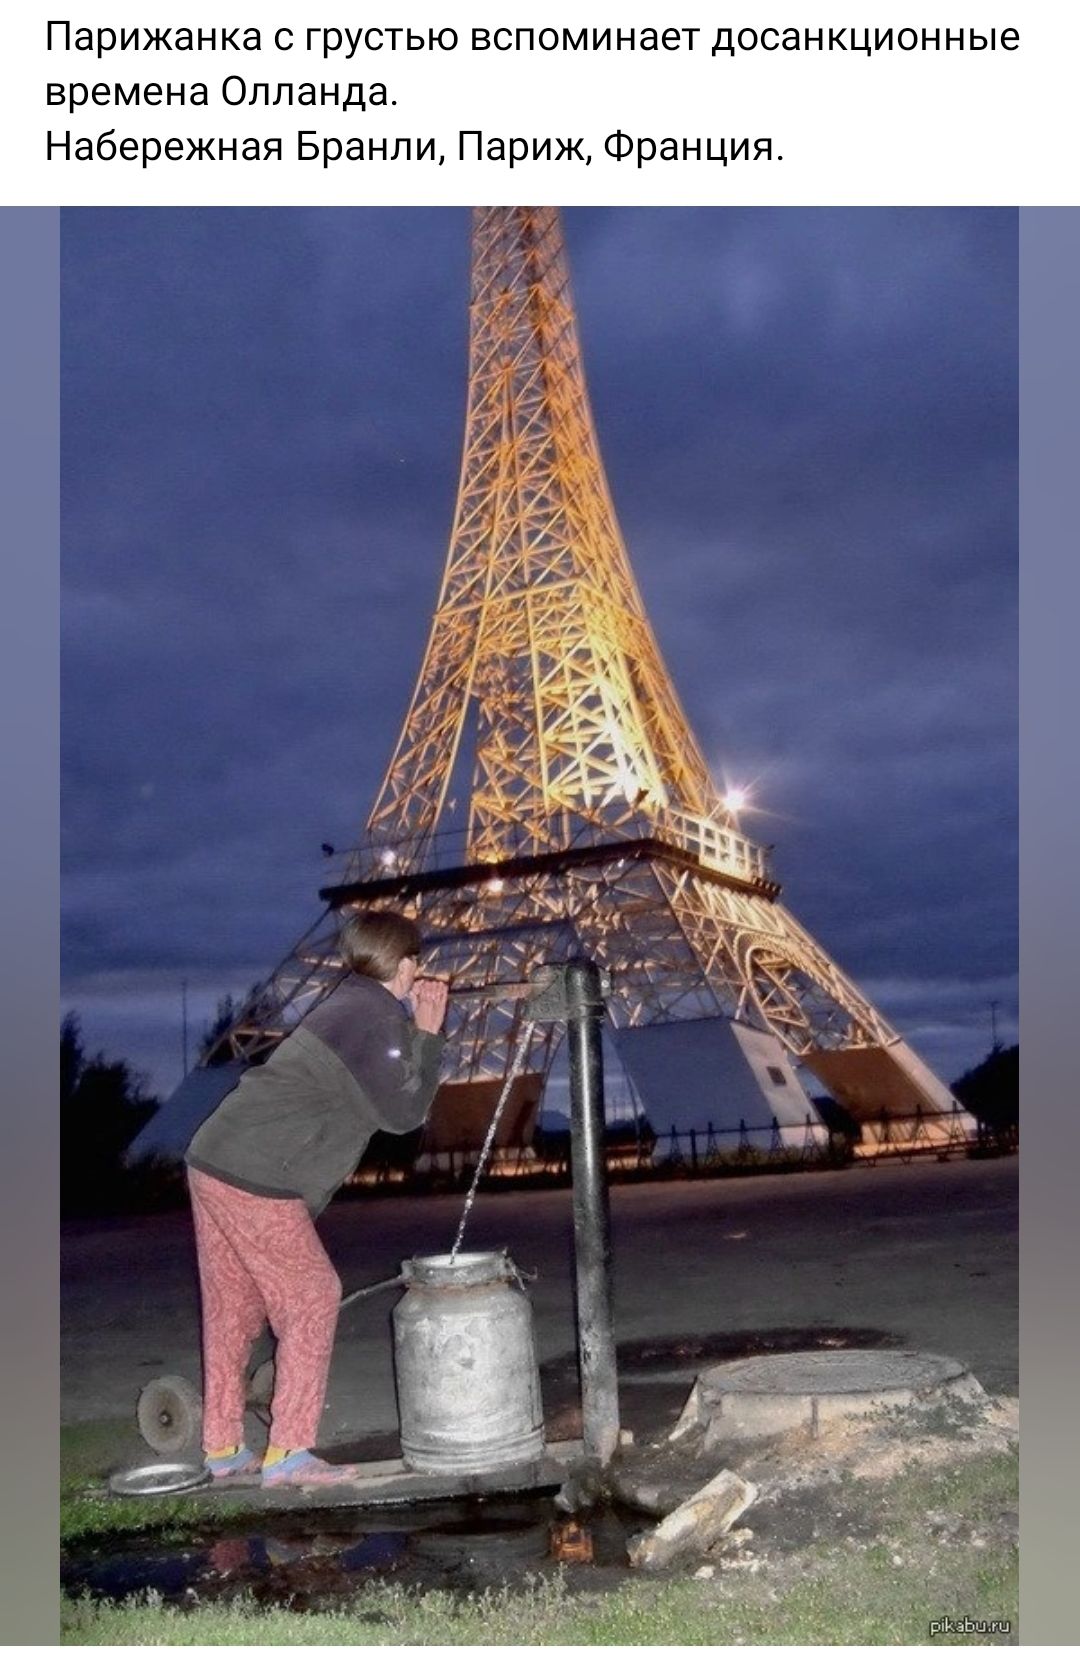 Парижанка грустью вспоминает досанкциснные времена Оппанда Набережная Бренди Париж Франция